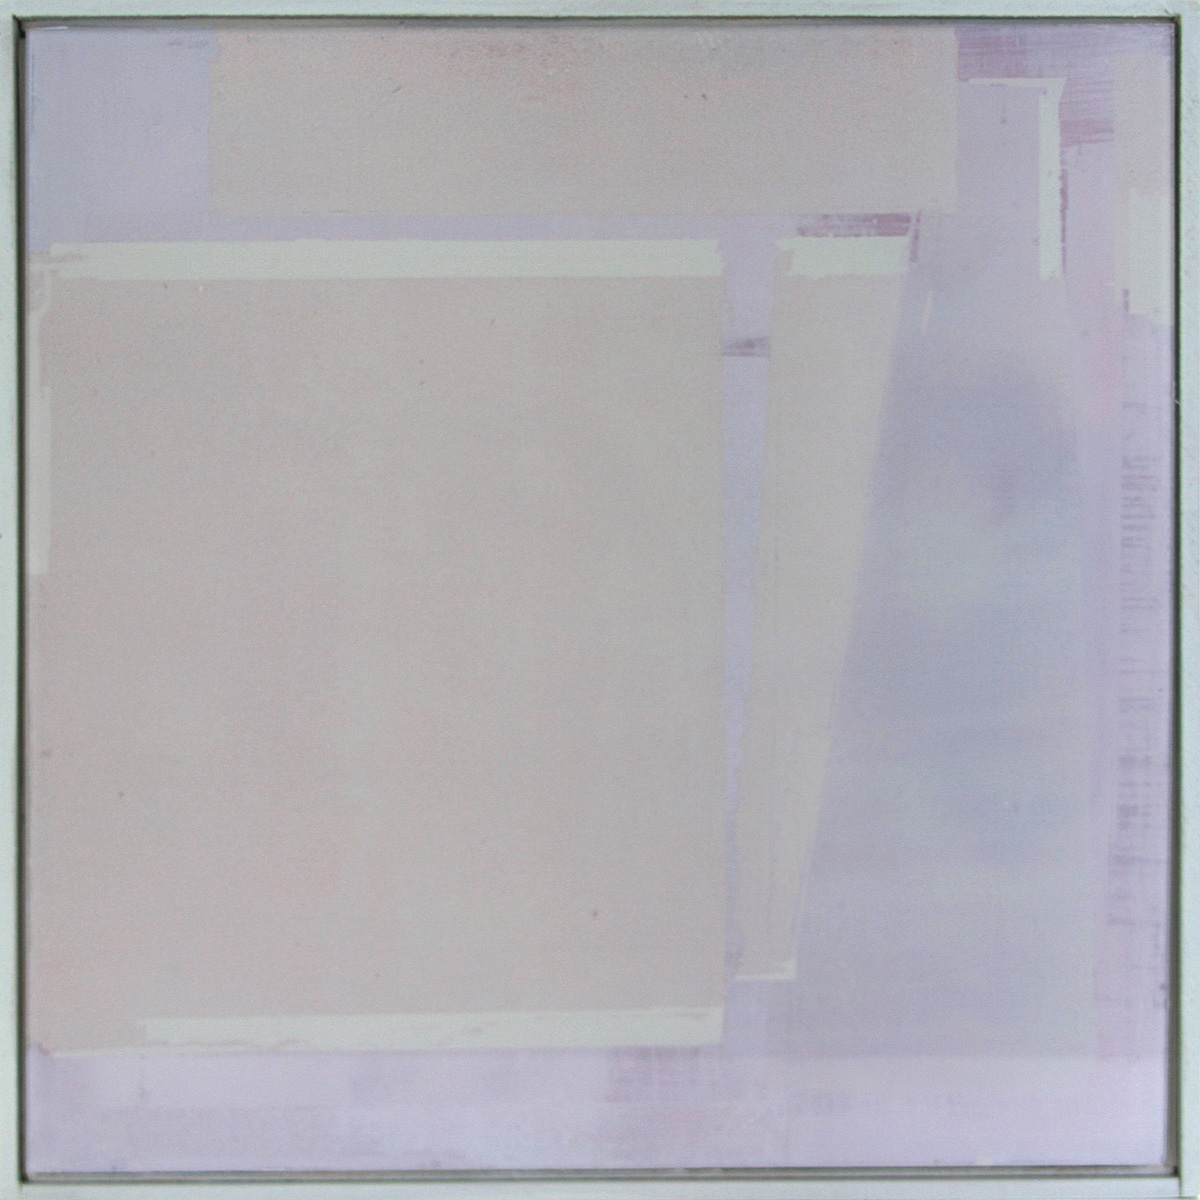 Auf-Glas-Malerei 2 / Schichtungen, 201630 x 30 cmPigment, grounded on glass, framed